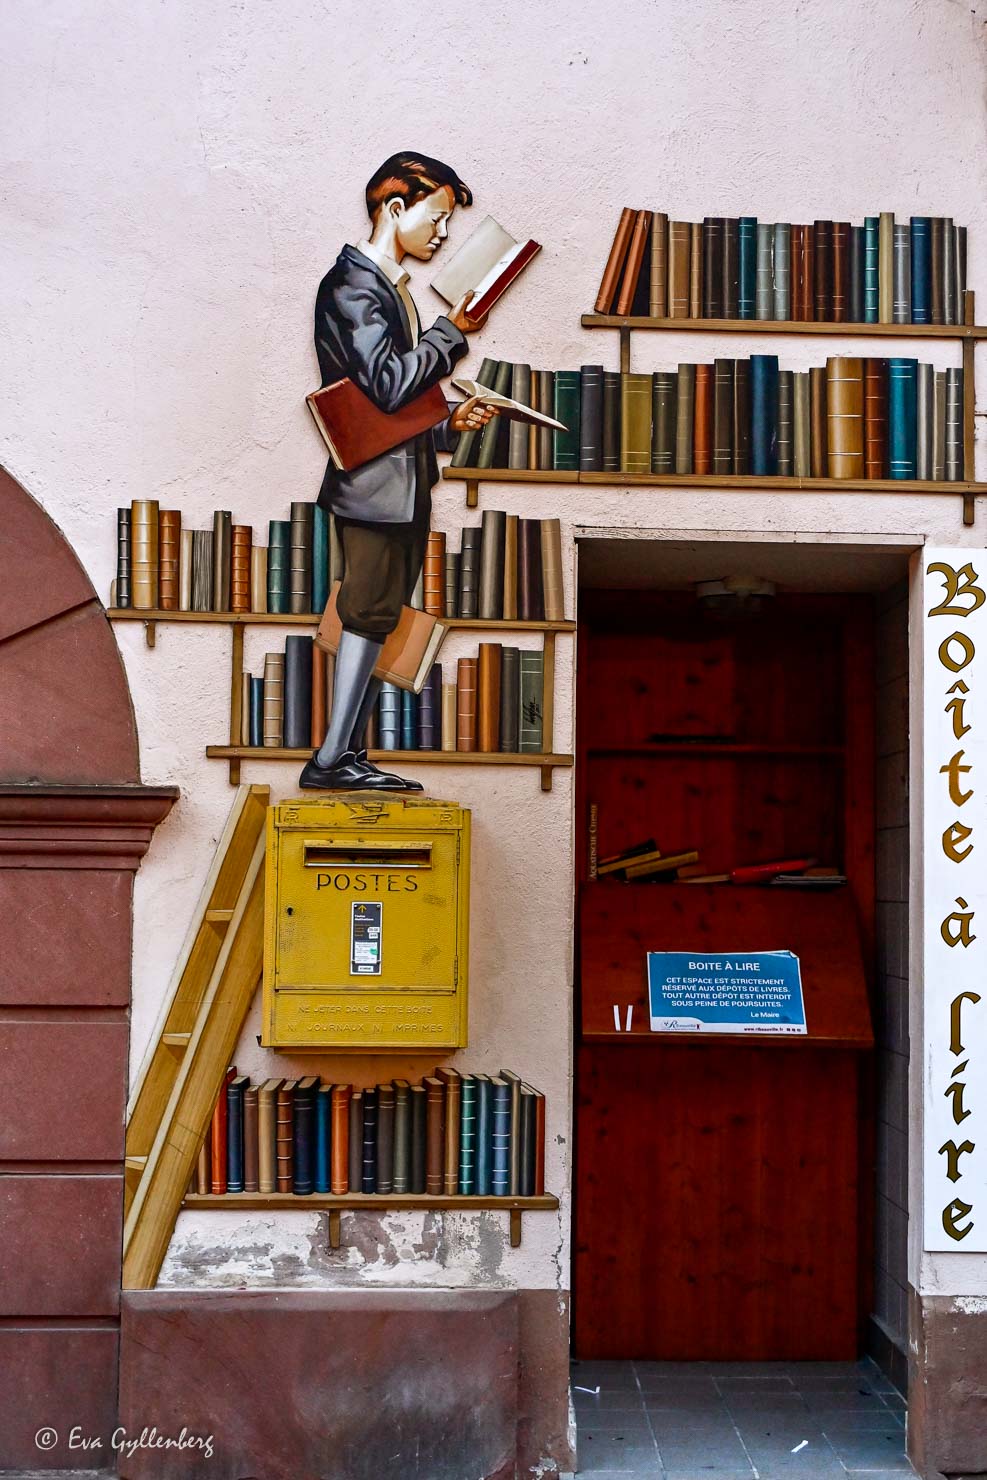 Rolig dörr med dekoration av en man som klättrar bland böcker